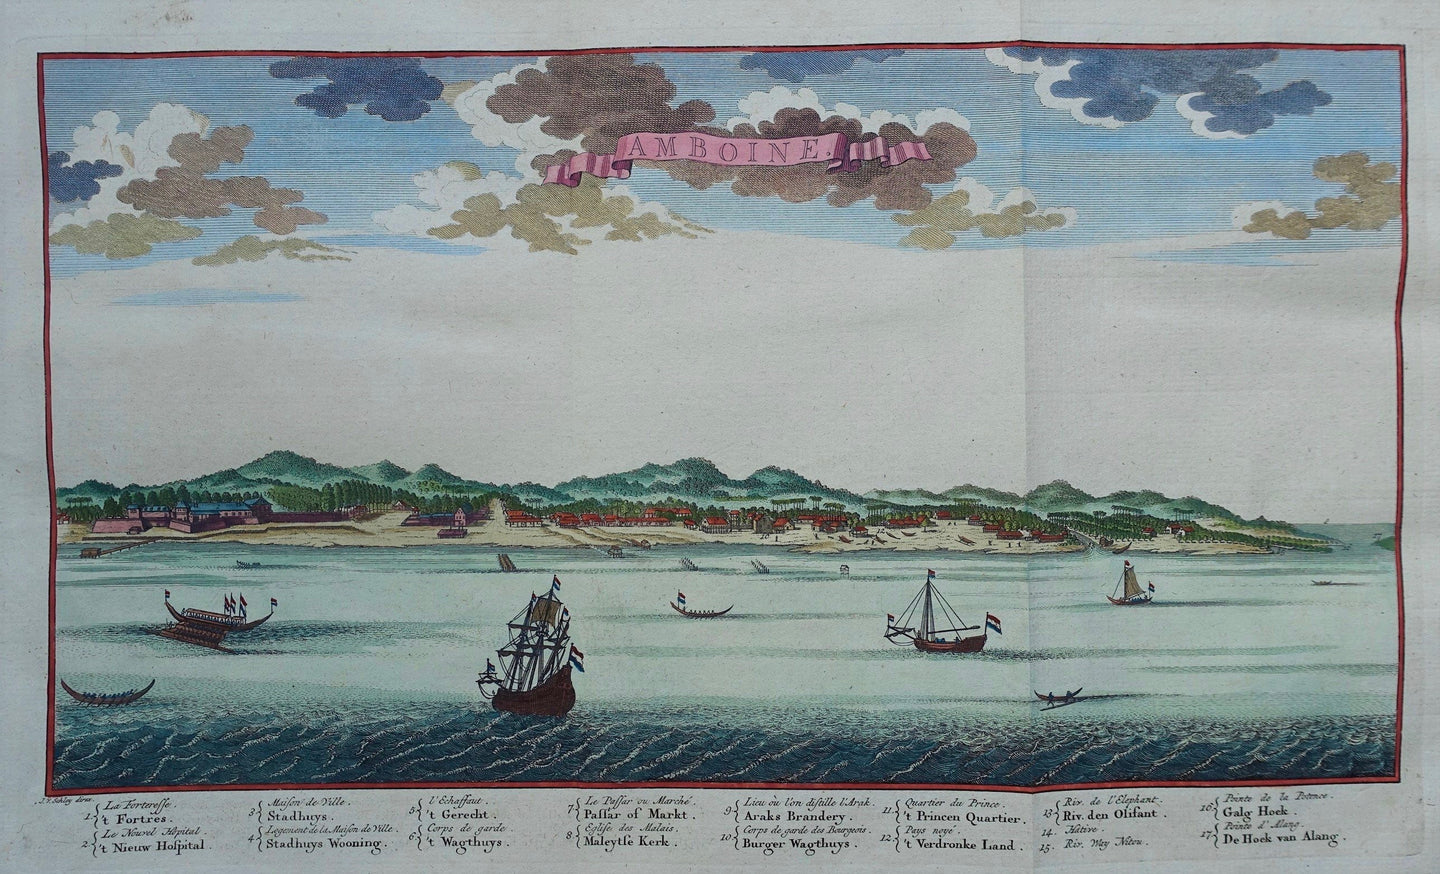 Indonesië Molukken Ambon City Indonesia - J van der Schley / P de Hondt - 1763